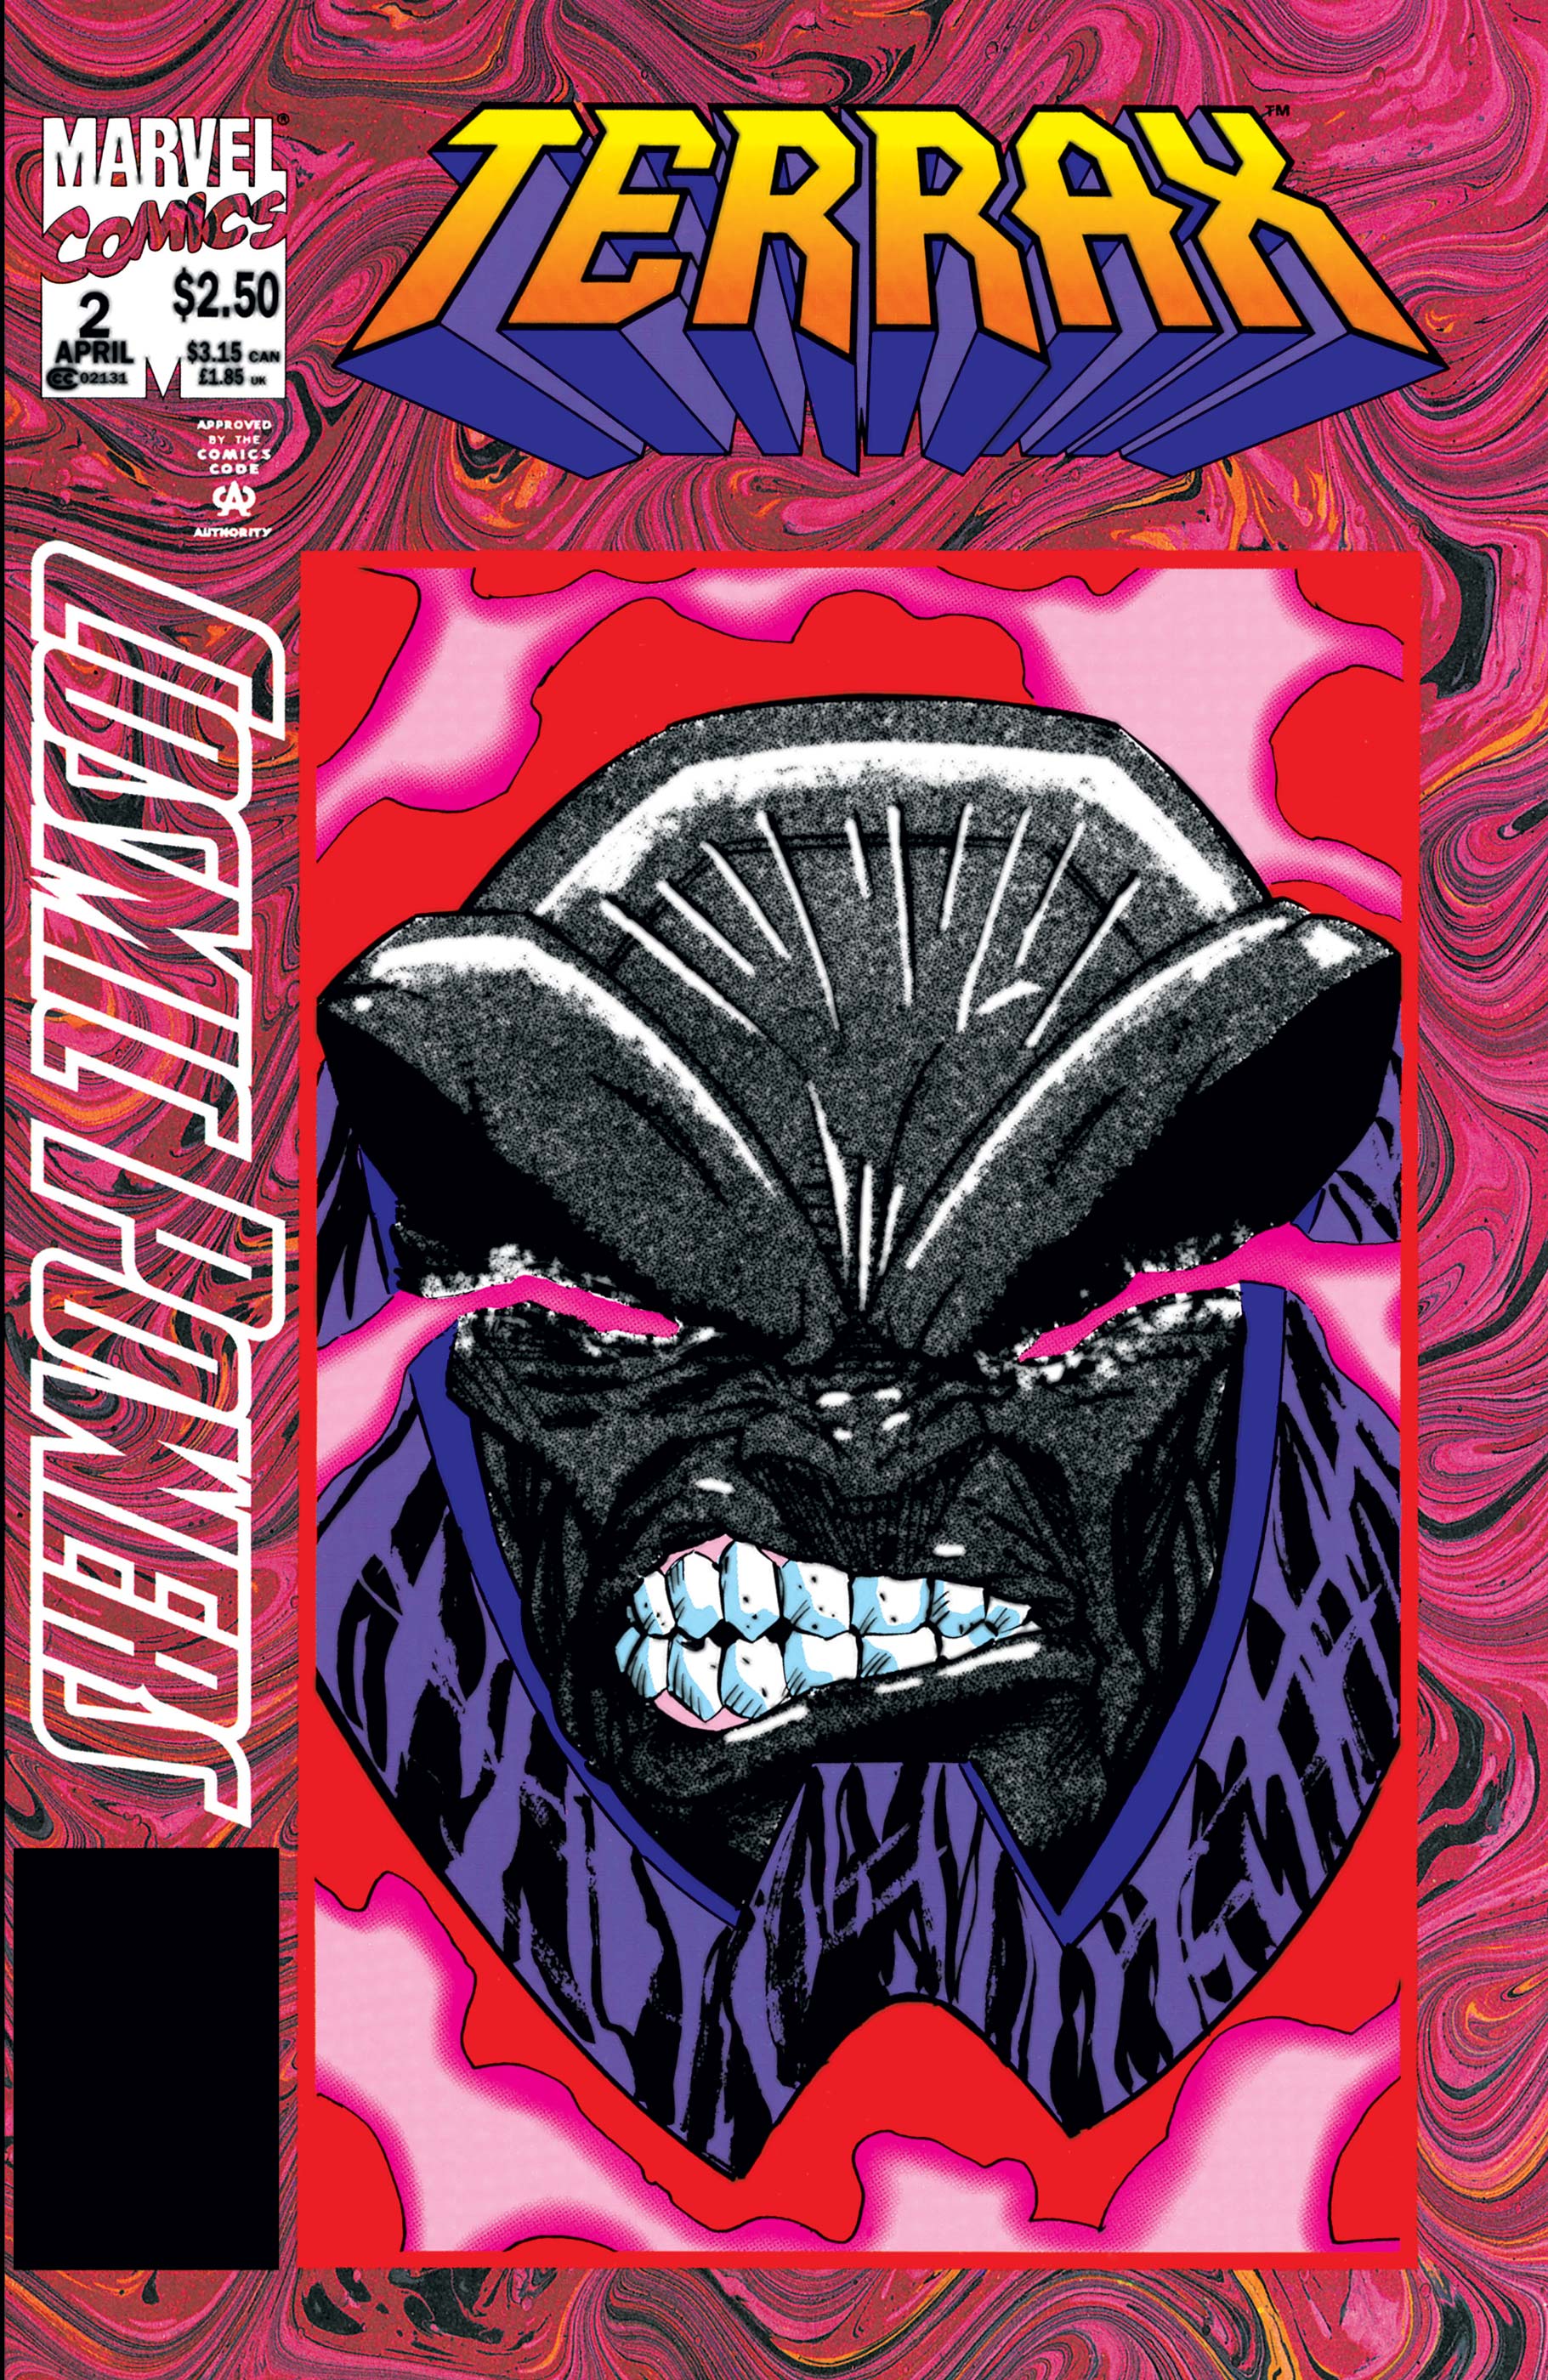 Cosmic Powers (1994) #2